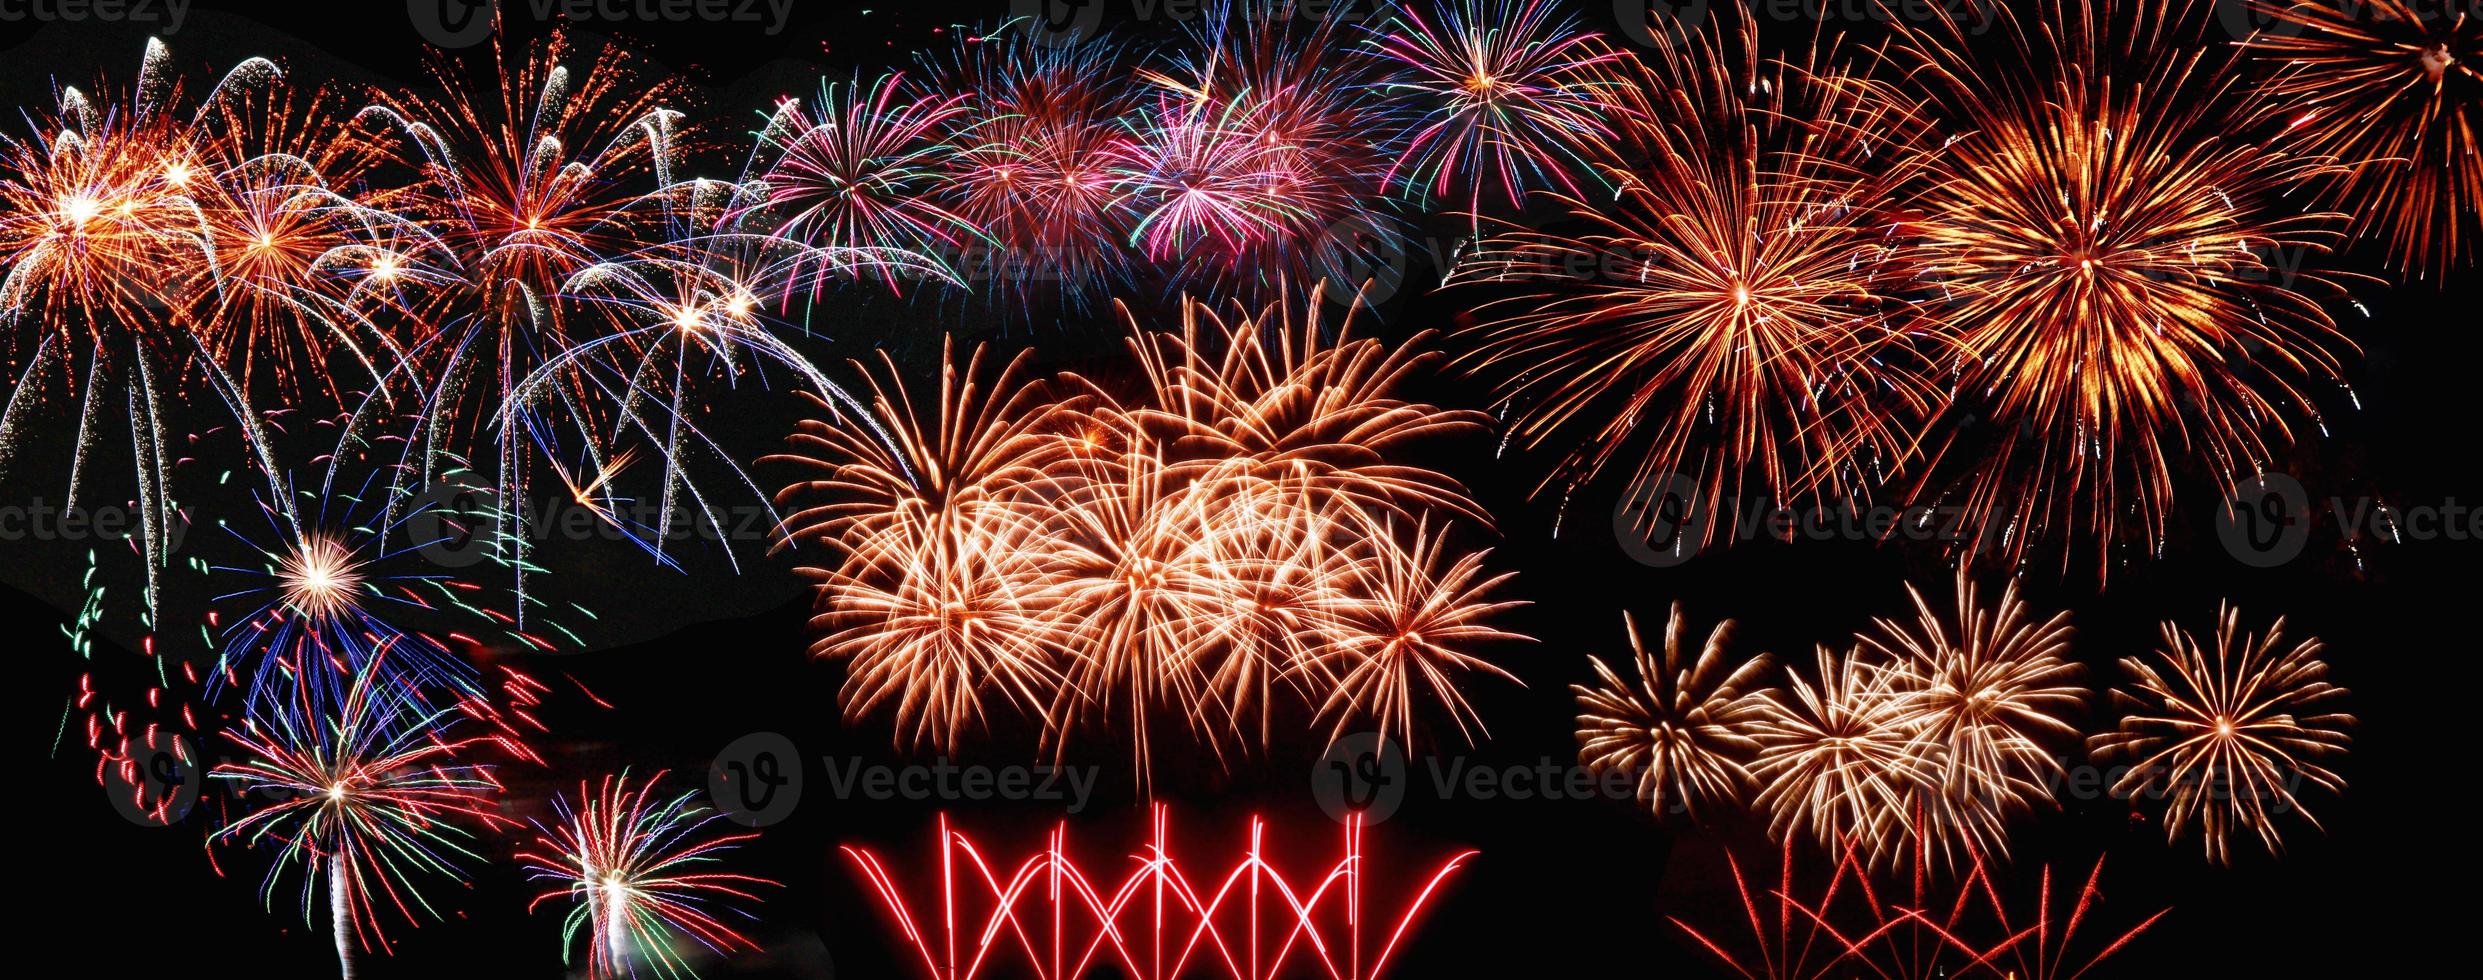 fuochi d'artificio colorati astratti sul cielo scuro. concetto di celebrazione e anniversario foto